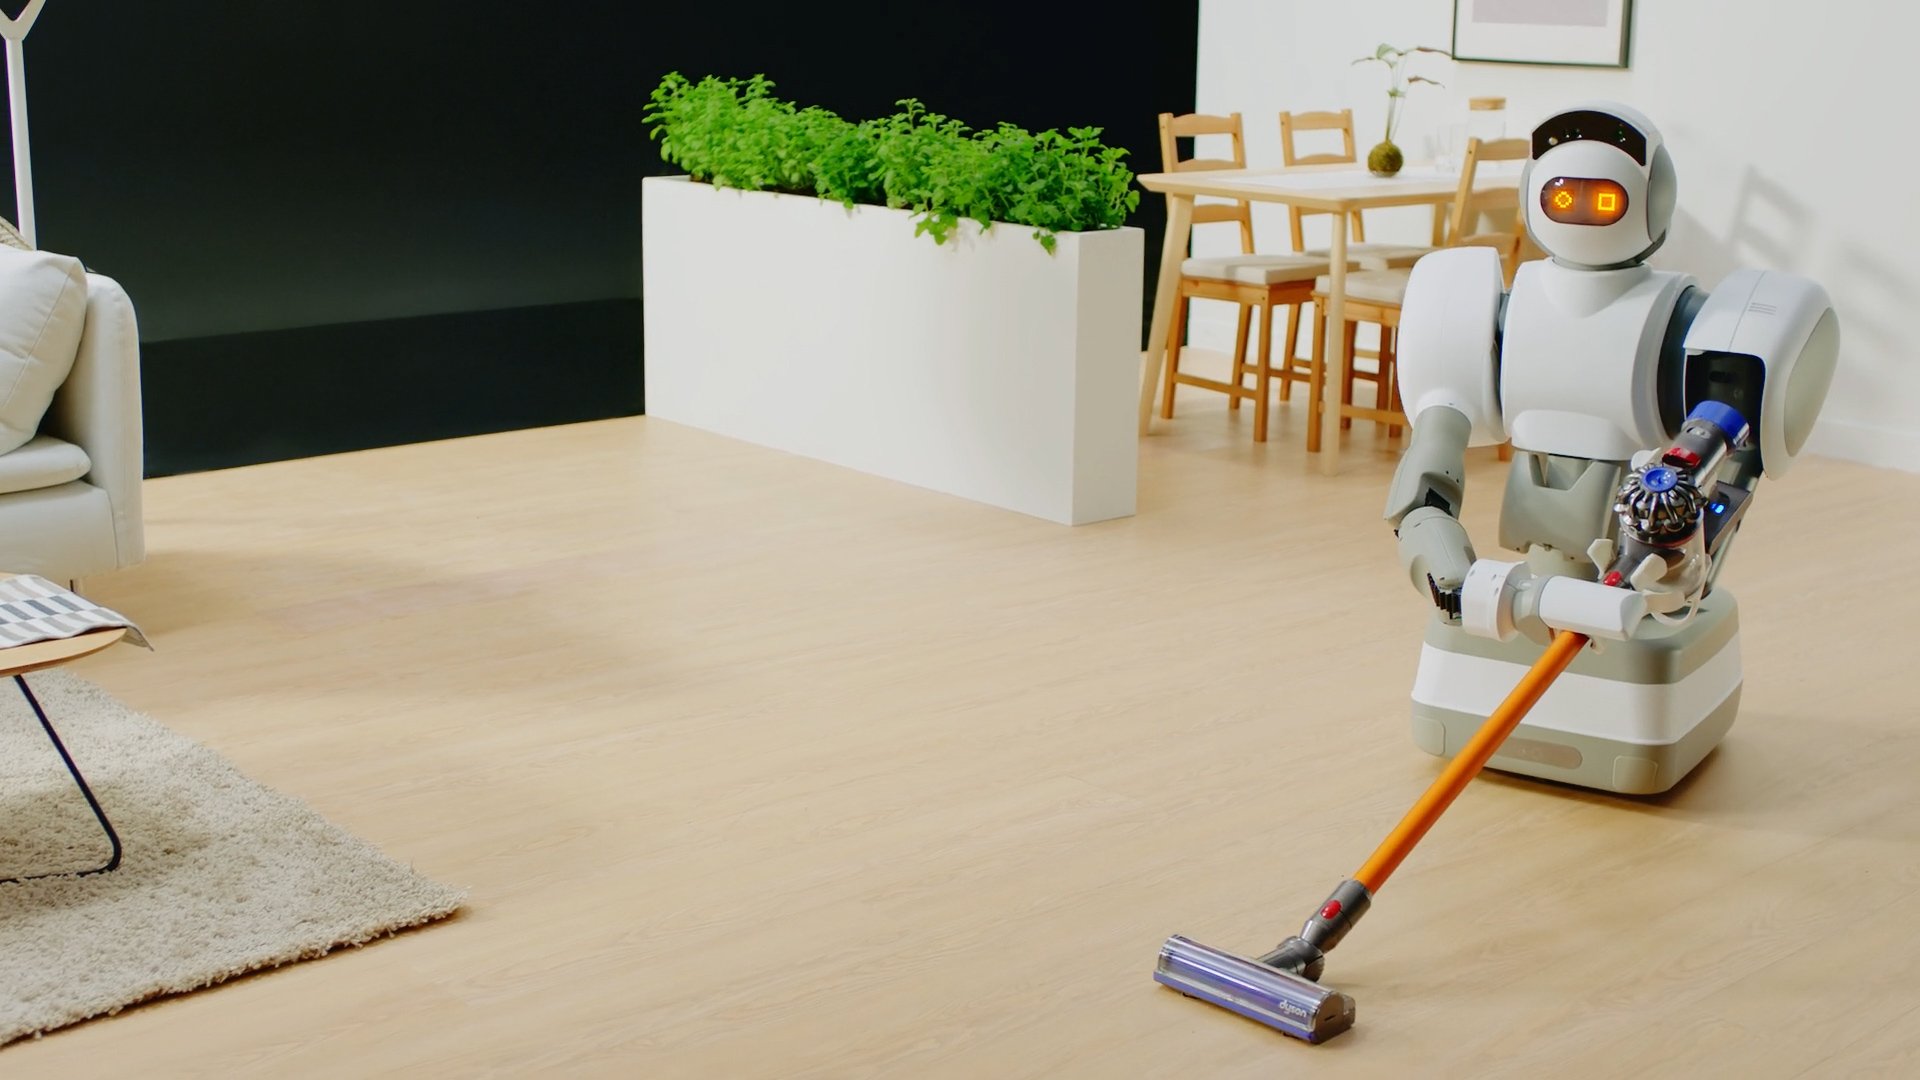 Запусти уборку роботом. Роботы для уборки. Робот уборщик. Робот помощник по дому. Робот уборщик для дома.